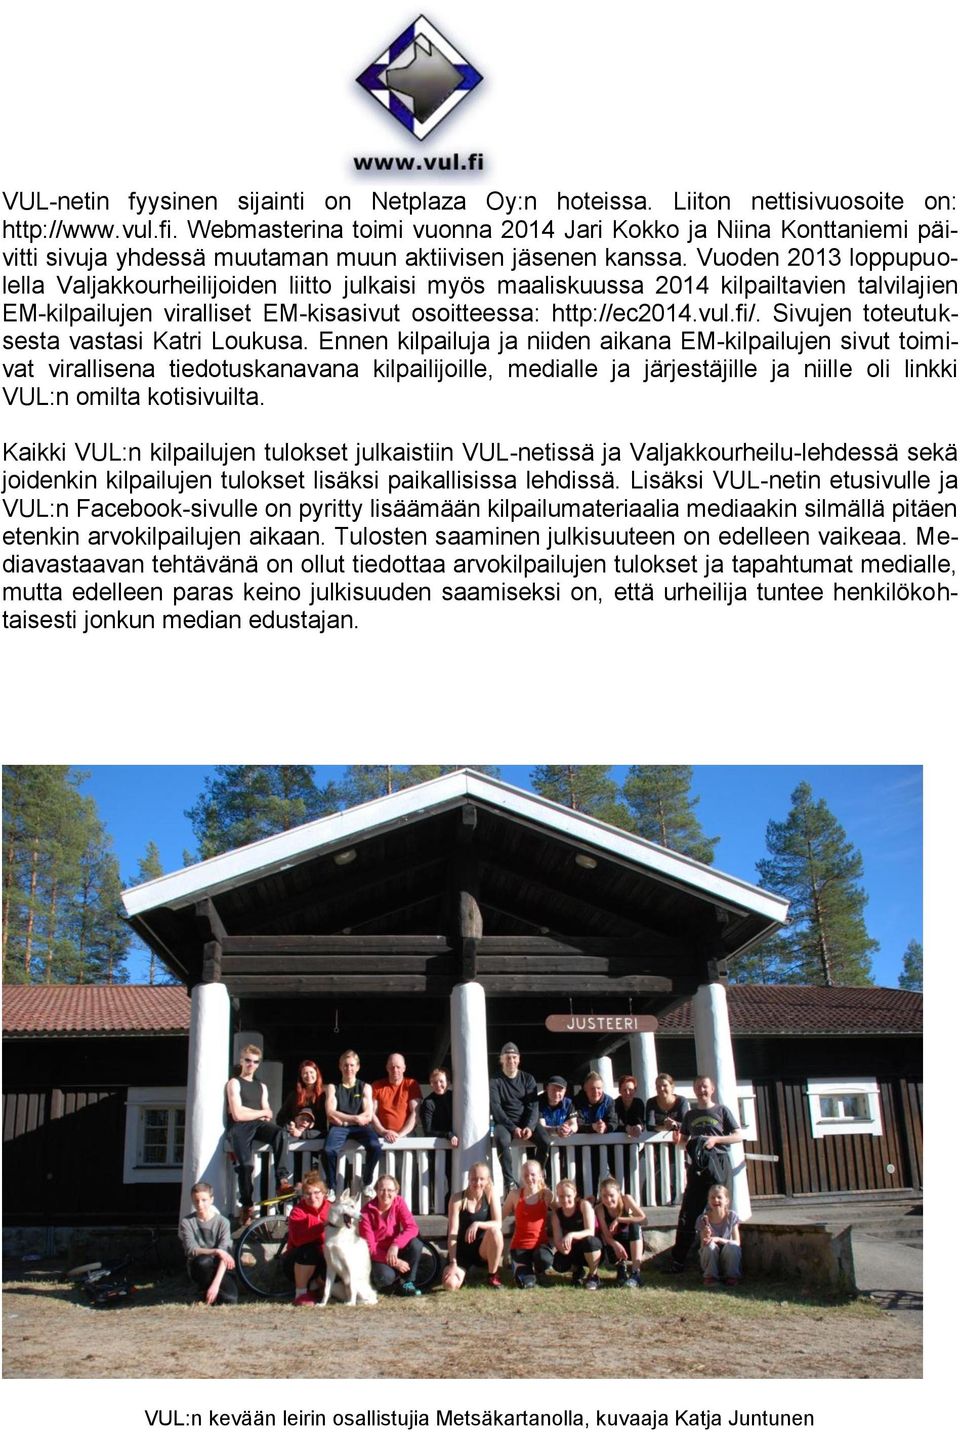 Vuoden 2013 loppupuolella Valjakkourheilijoiden liitto julkaisi myös maaliskuussa 2014 kilpailtavien talvilajien EM-kilpailujen viralliset EM-kisasivut osoitteessa: http://ec2014.vul.fi/.